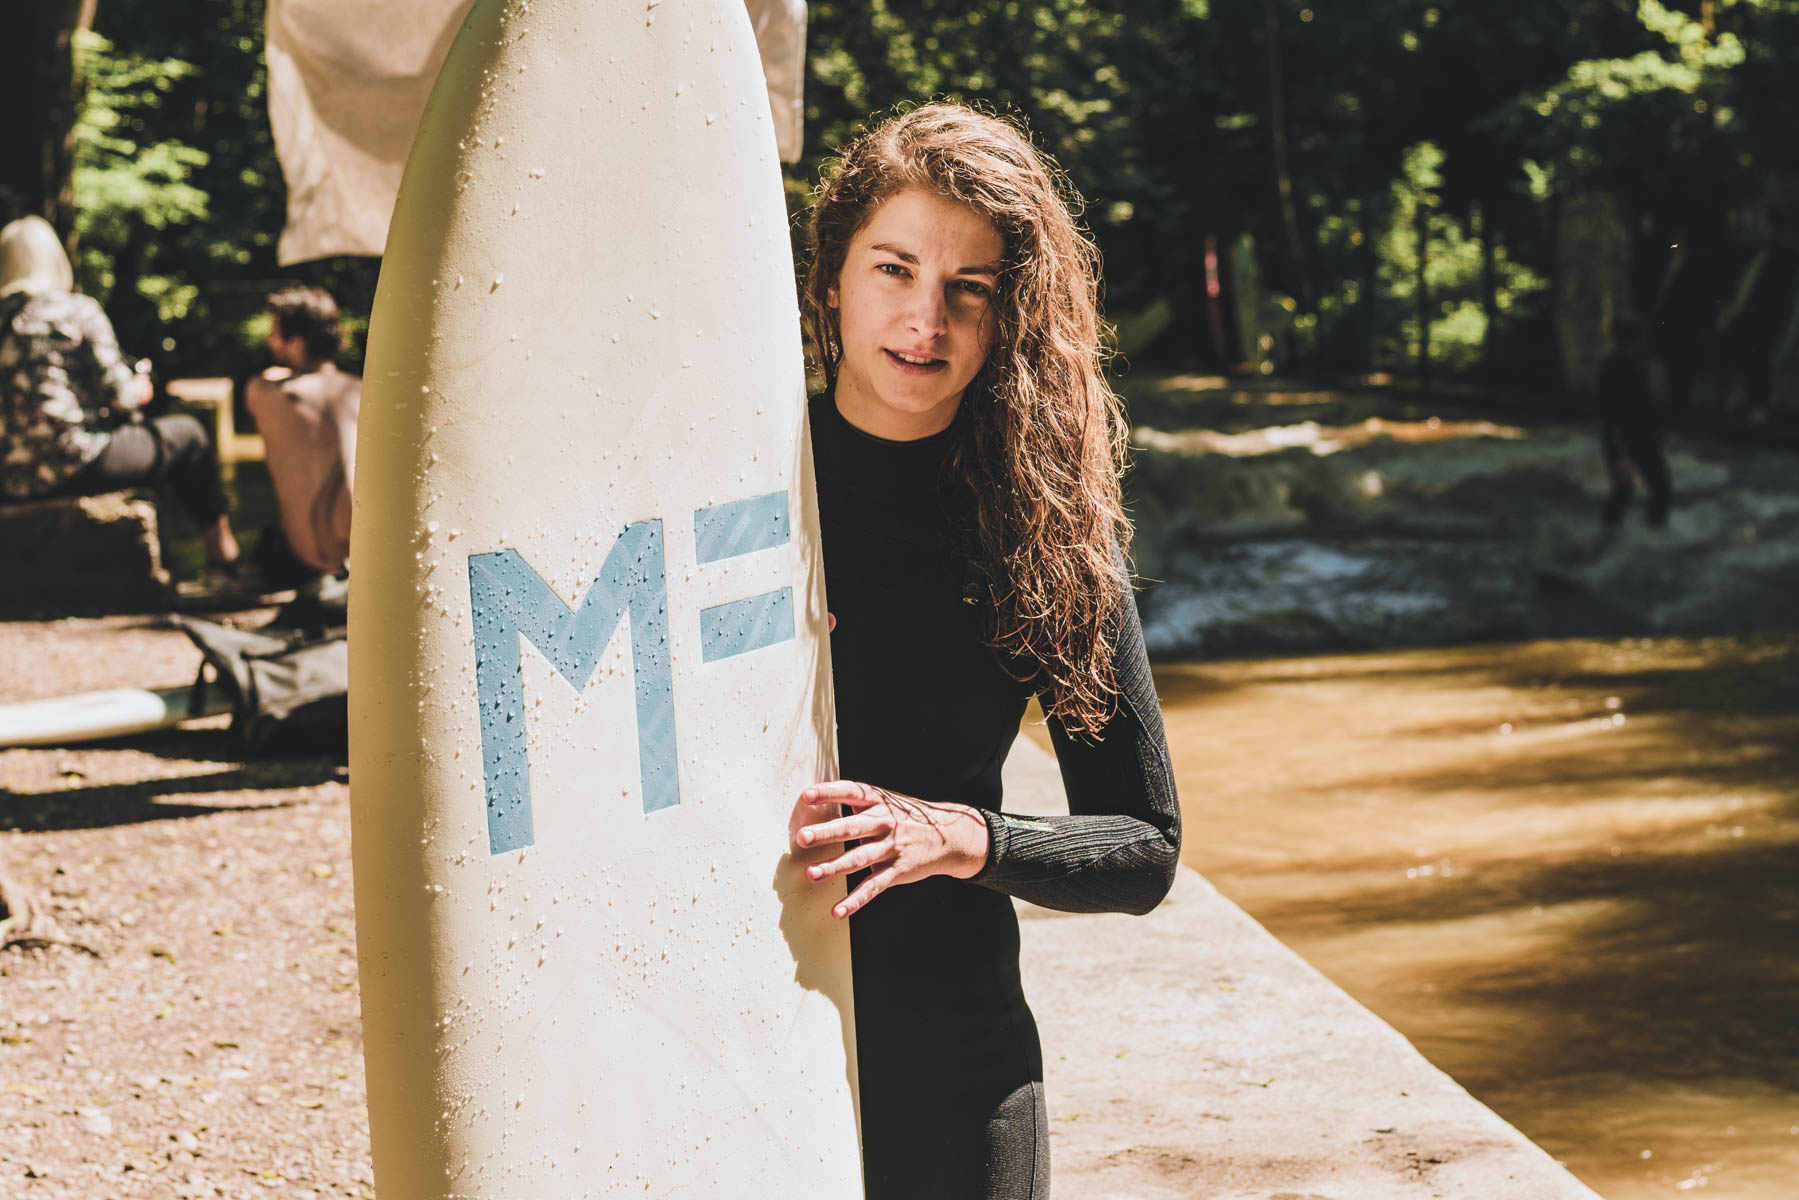 Isa aus unserem Team sieht keine rosige Zukunft für Surfer*innen der Stadt. – ©wunderland media GmbH